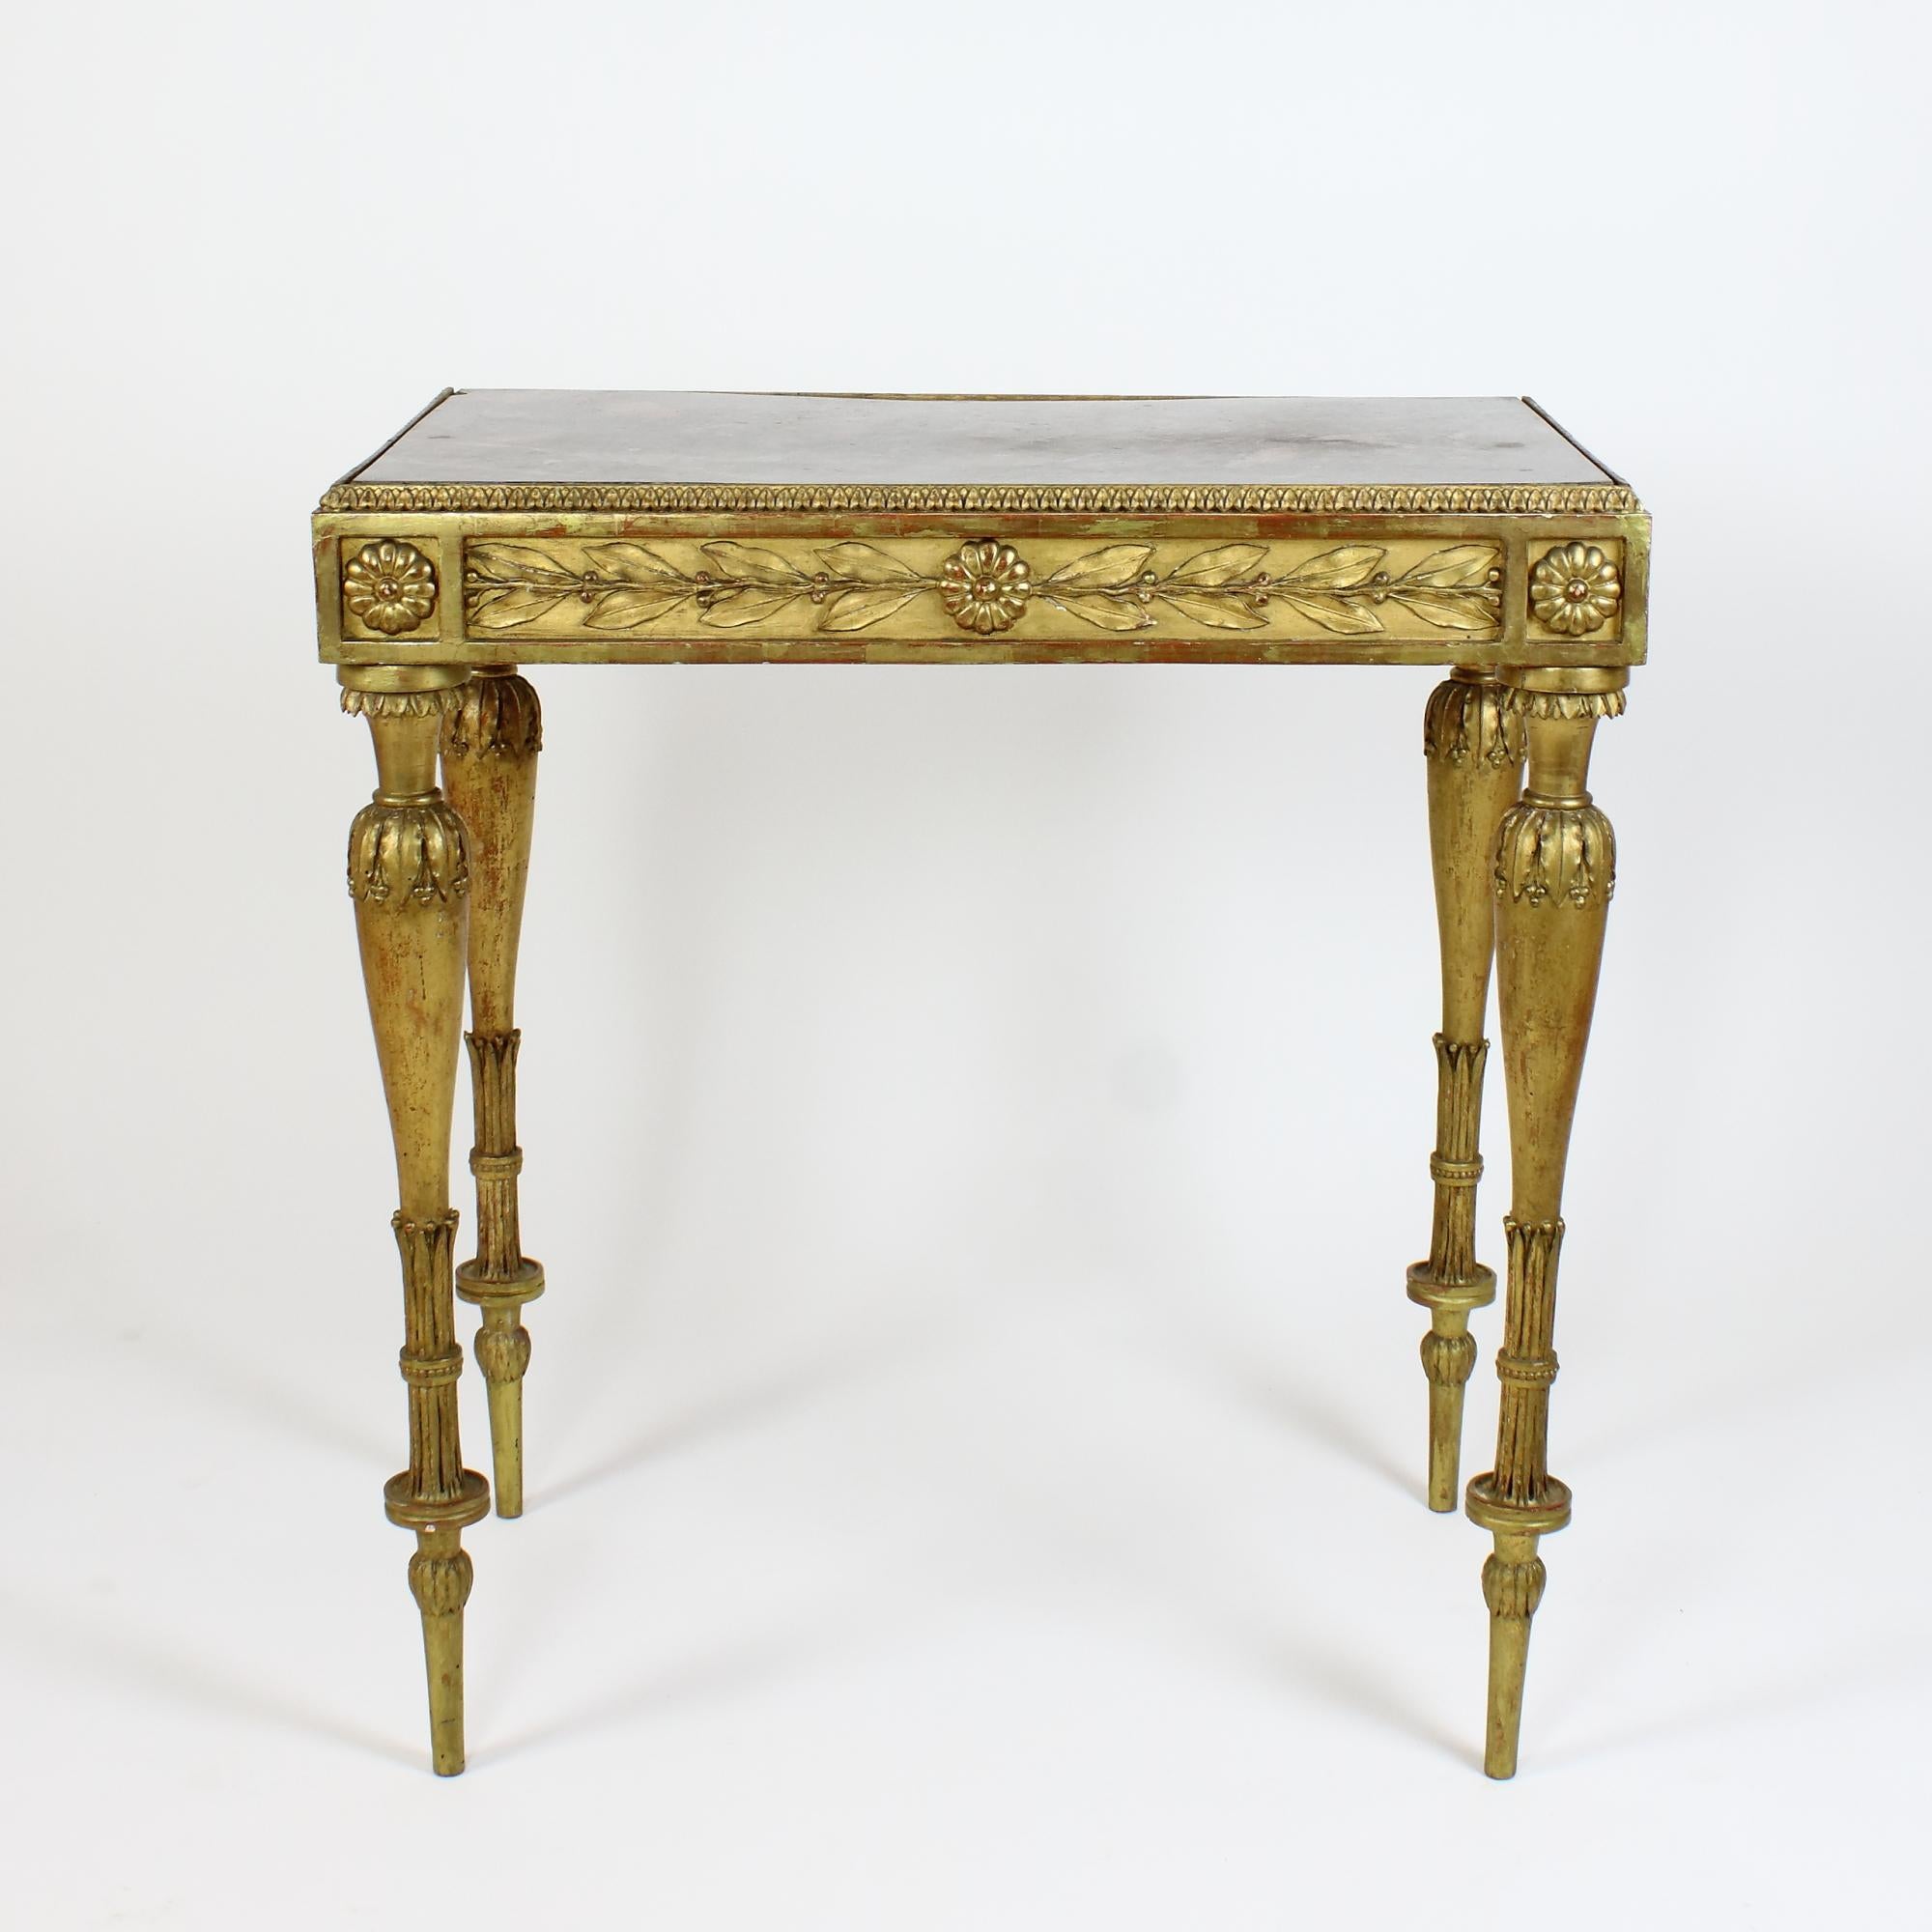 Table centrale en bois doré du XIXe siècle de style Napoléon III / Louis XVI

Une table rectangulaire en bois doré repose sur quatre pieds élancés en forme de fuseau richement sculptés et ornés de feuilles lancéolées. L'avant et les deux côtés sont